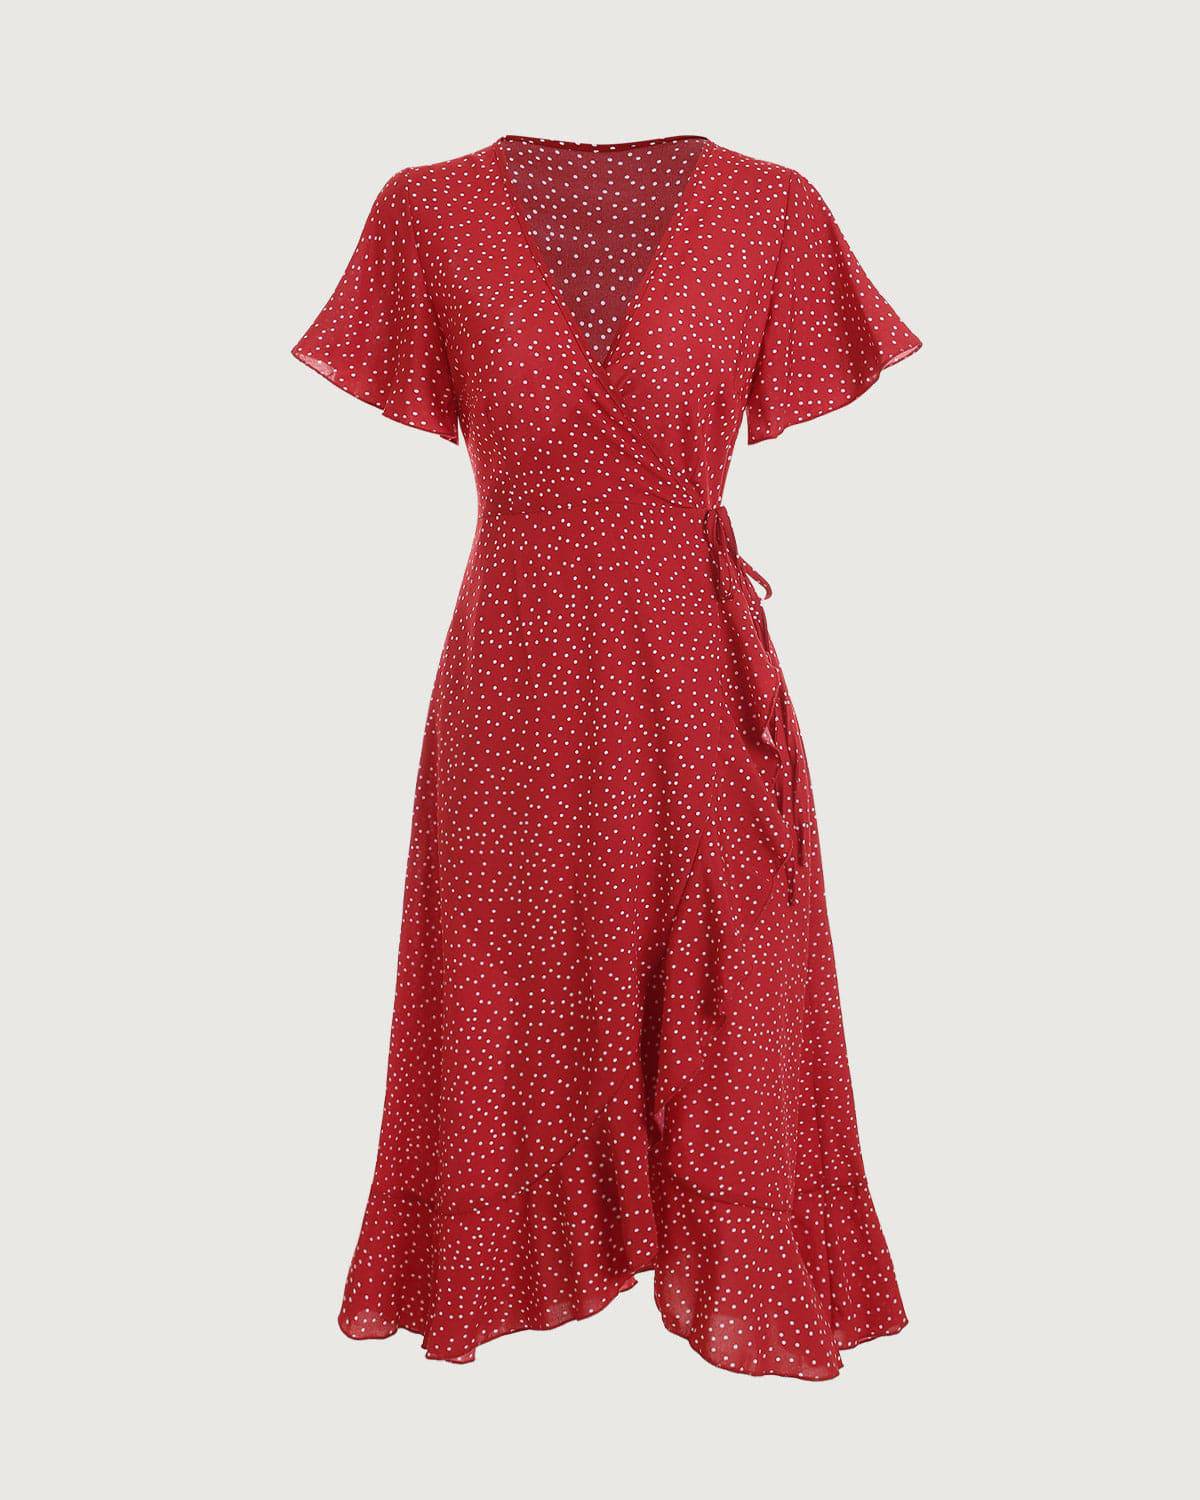 Buy Red Polka Dot Print Shift Dress for Women Online